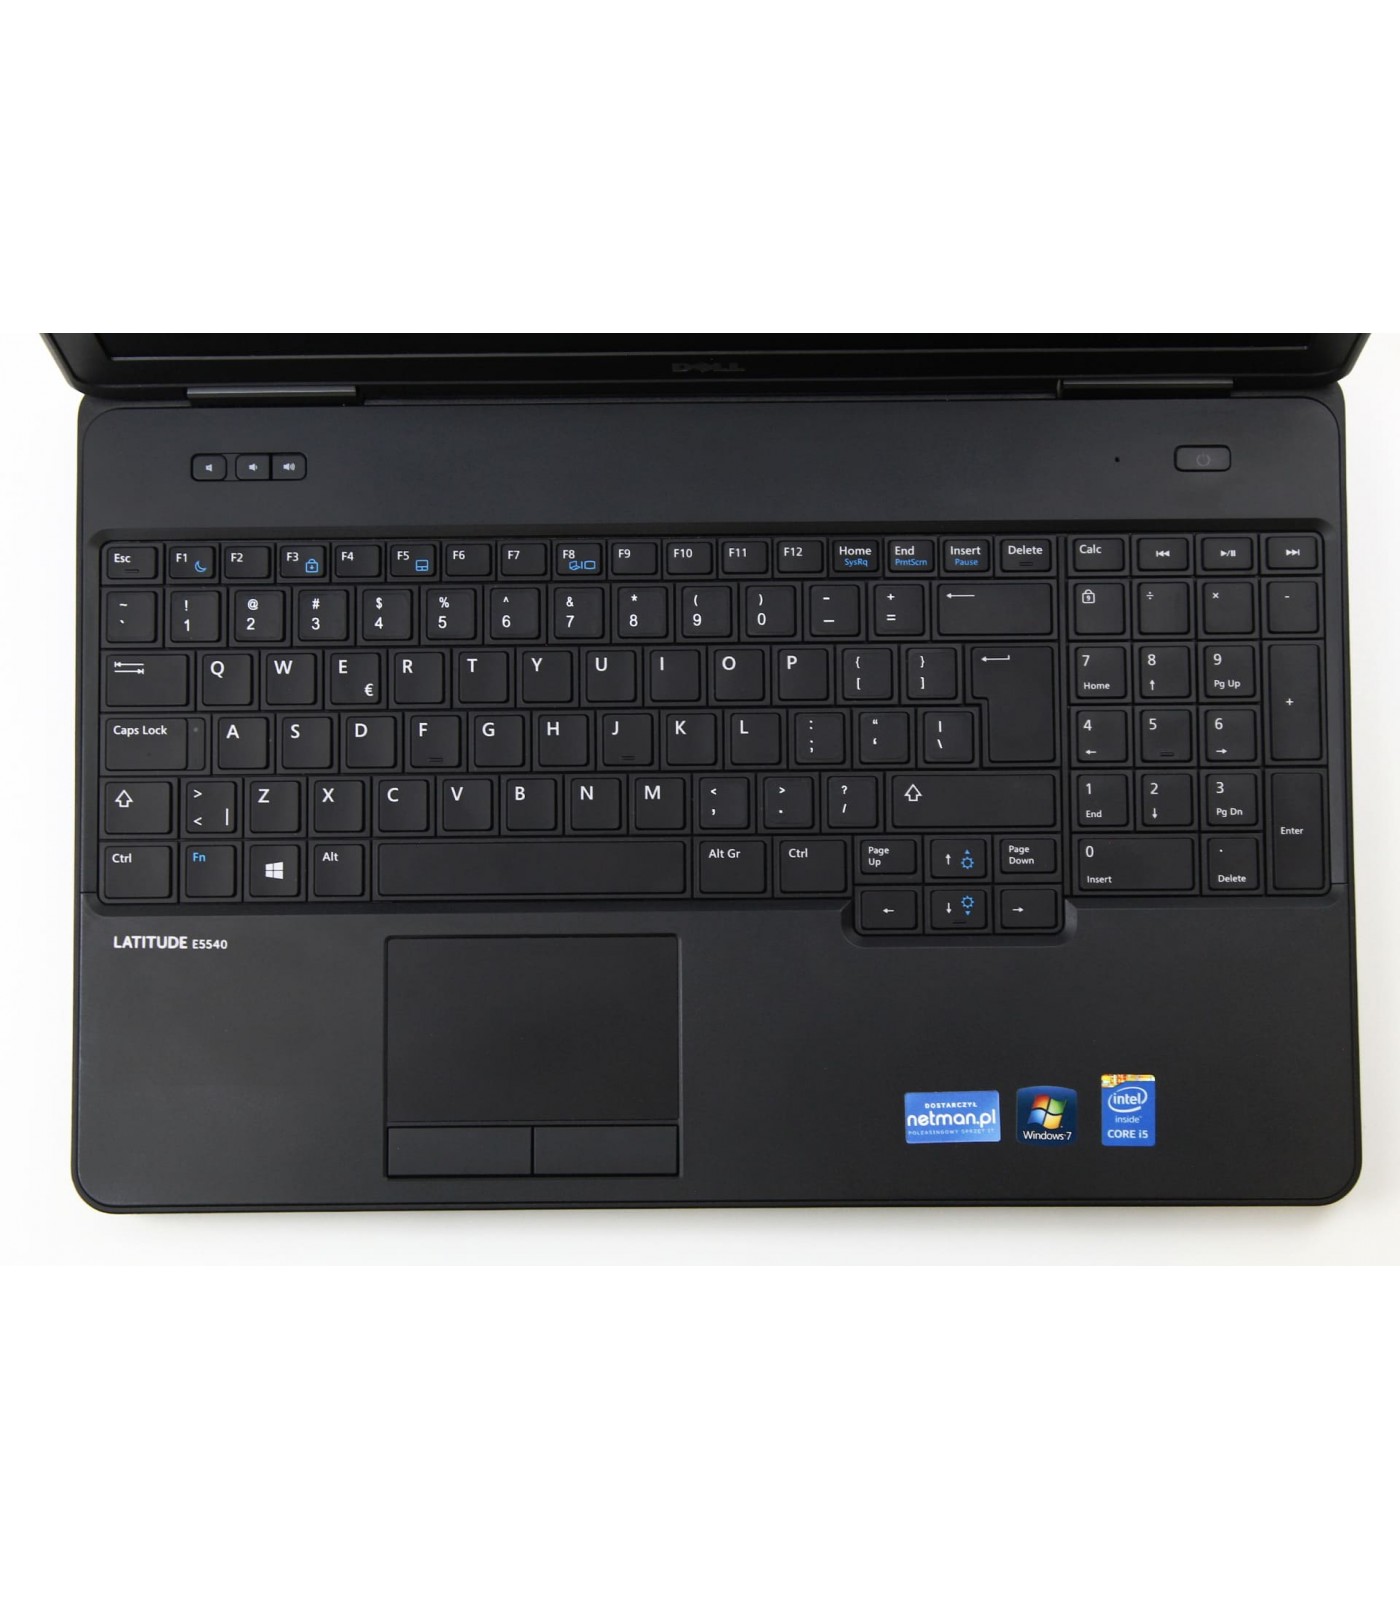 Poleasingowy laptop Dell Latitude E5540 z procesorem i5-4310U w klasie A+